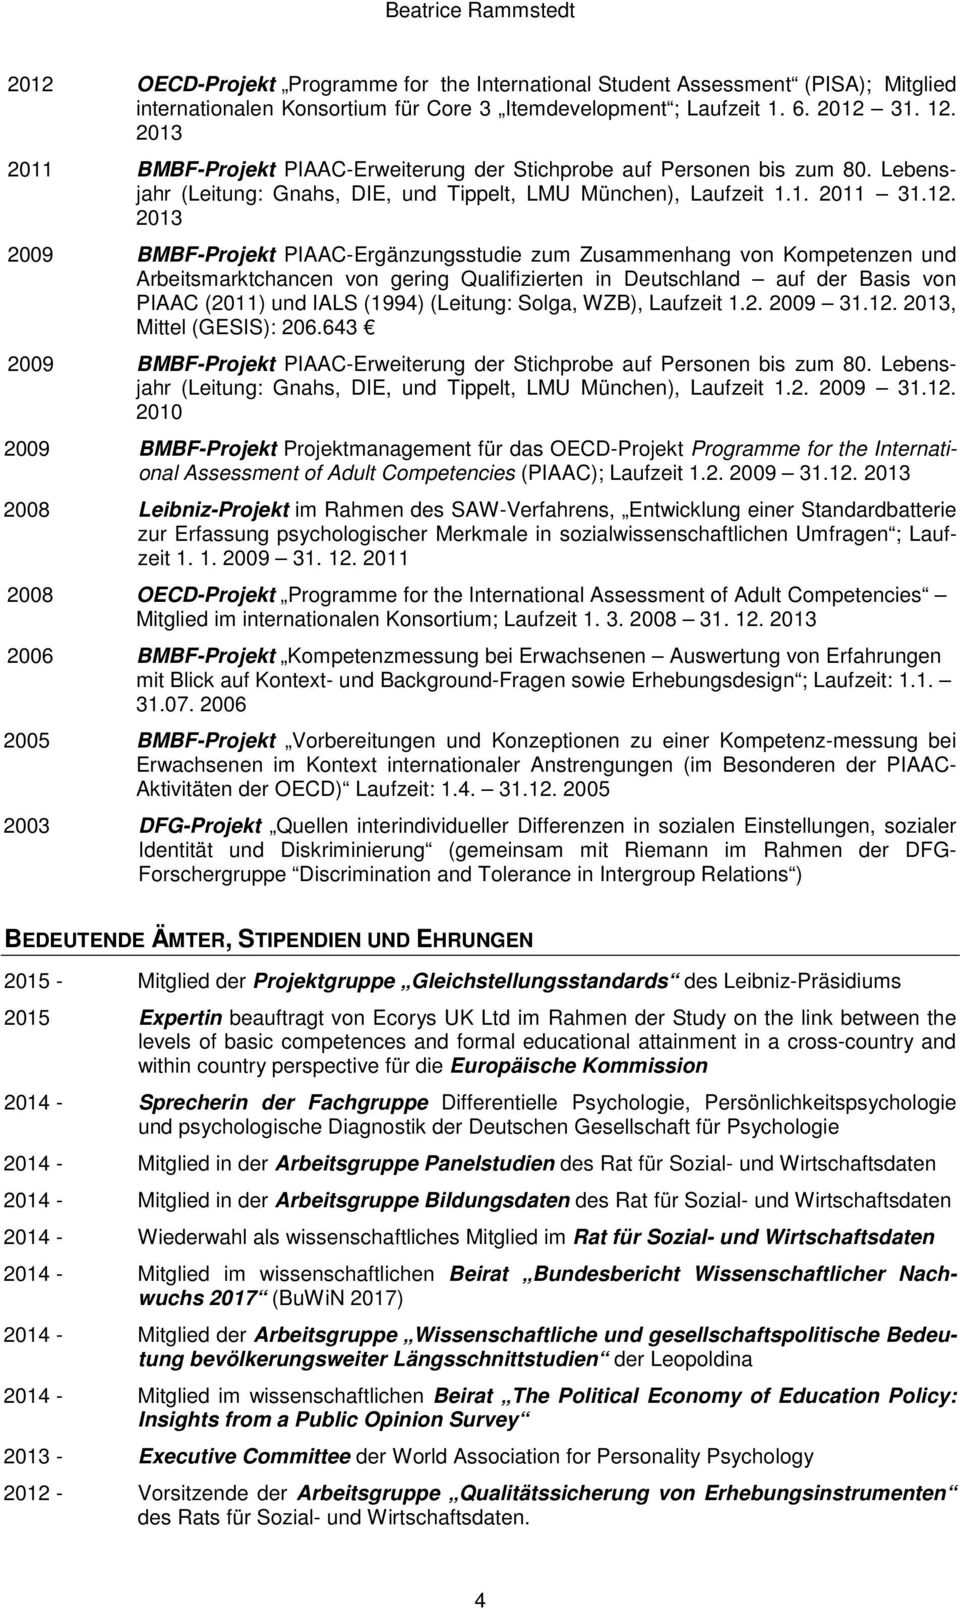 2013 2009 BMBF-Projekt PIAAC-Ergänzungsstudie zum Zusammenhang von Kompetenzen und Arbeitsmarktchancen von gering Qualifizierten in Deutschland auf der Basis von PIAAC (2011) und IALS (1994)